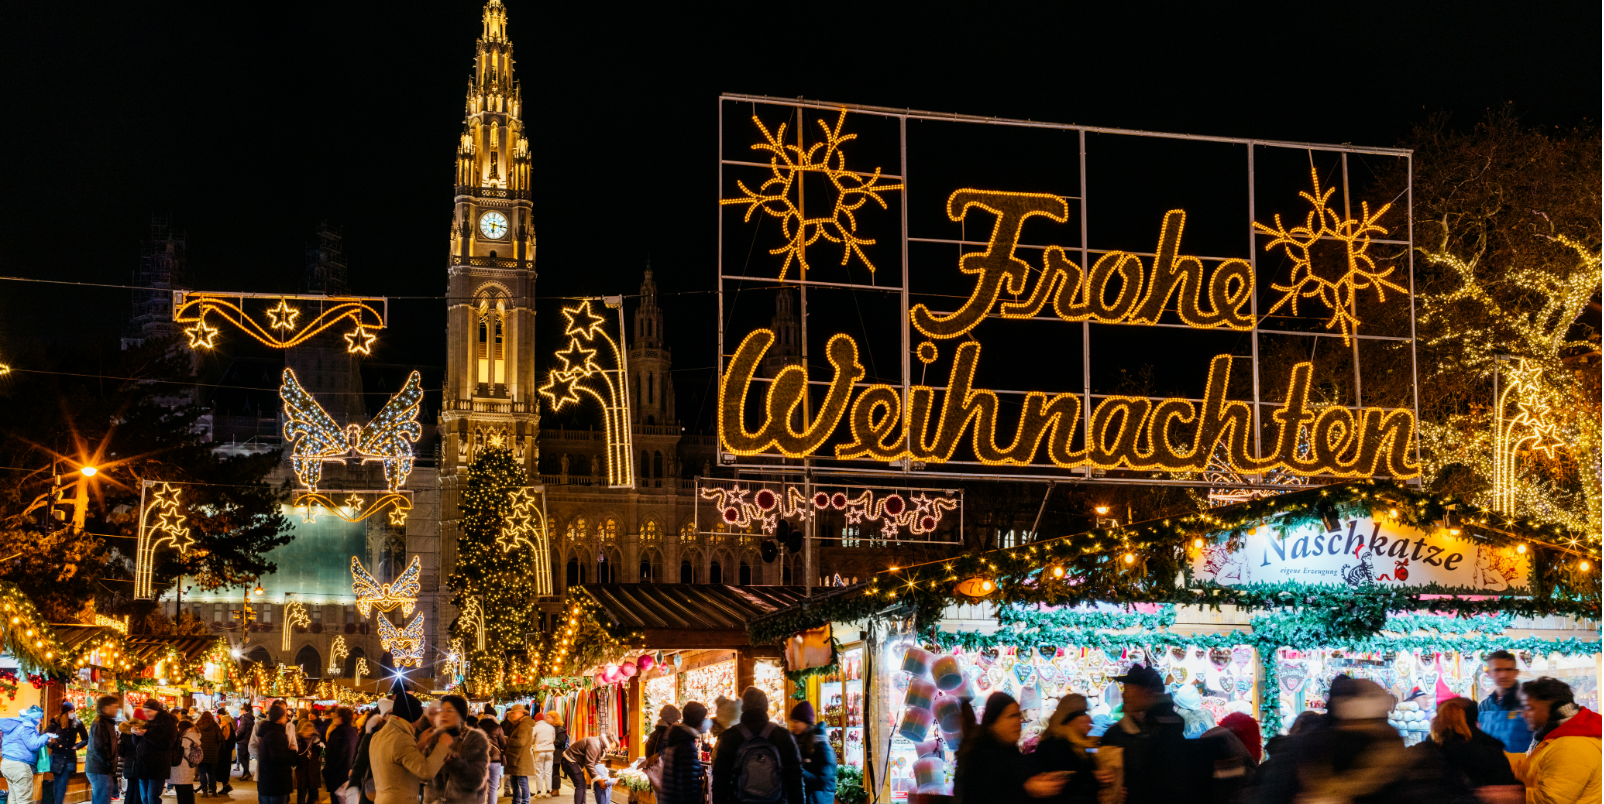 Christmas Market, Rathausplatz